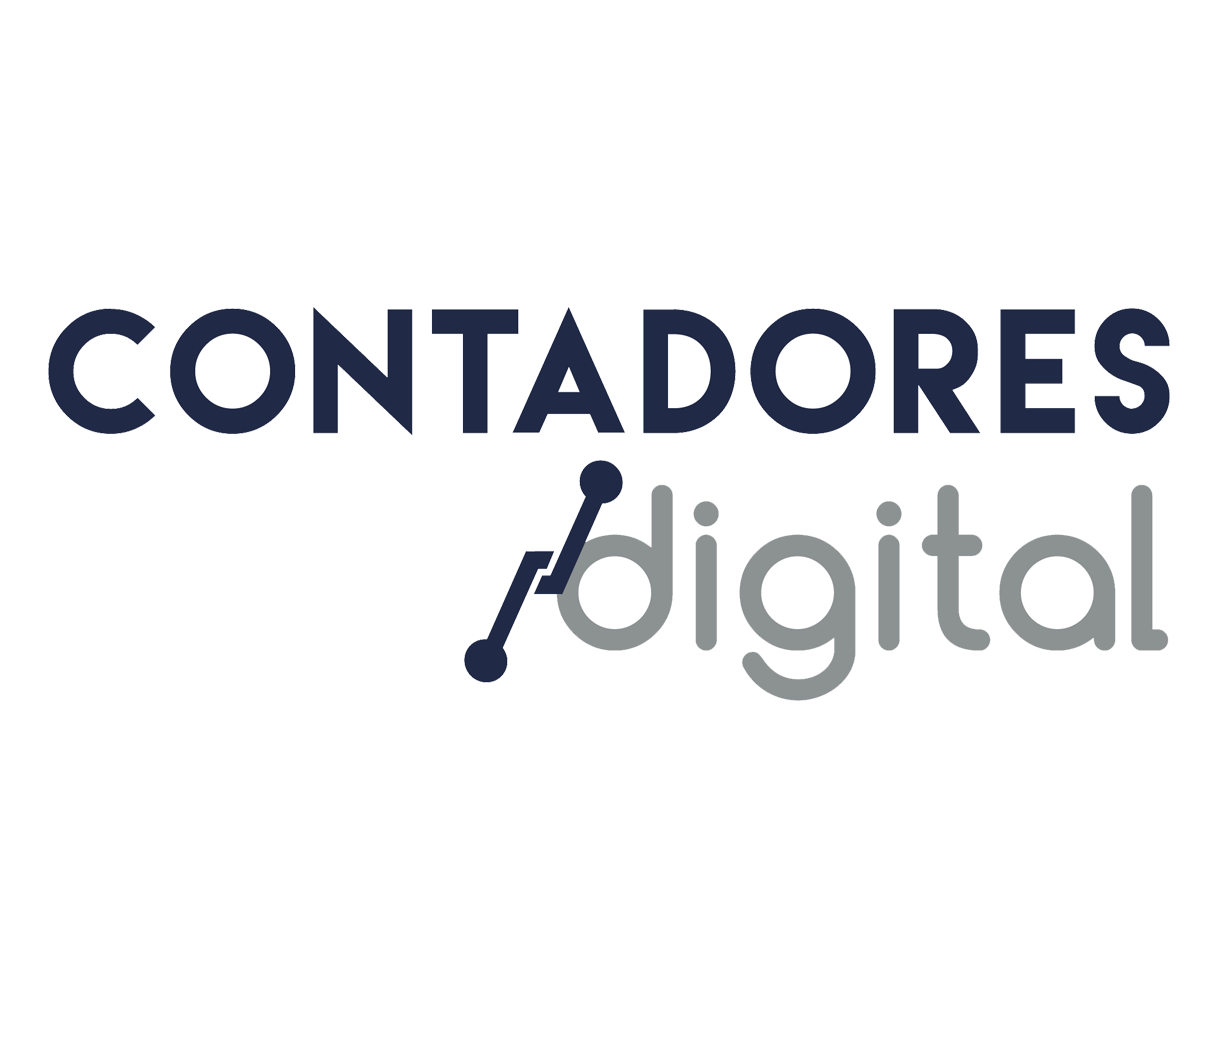 Ar Contadores Digital